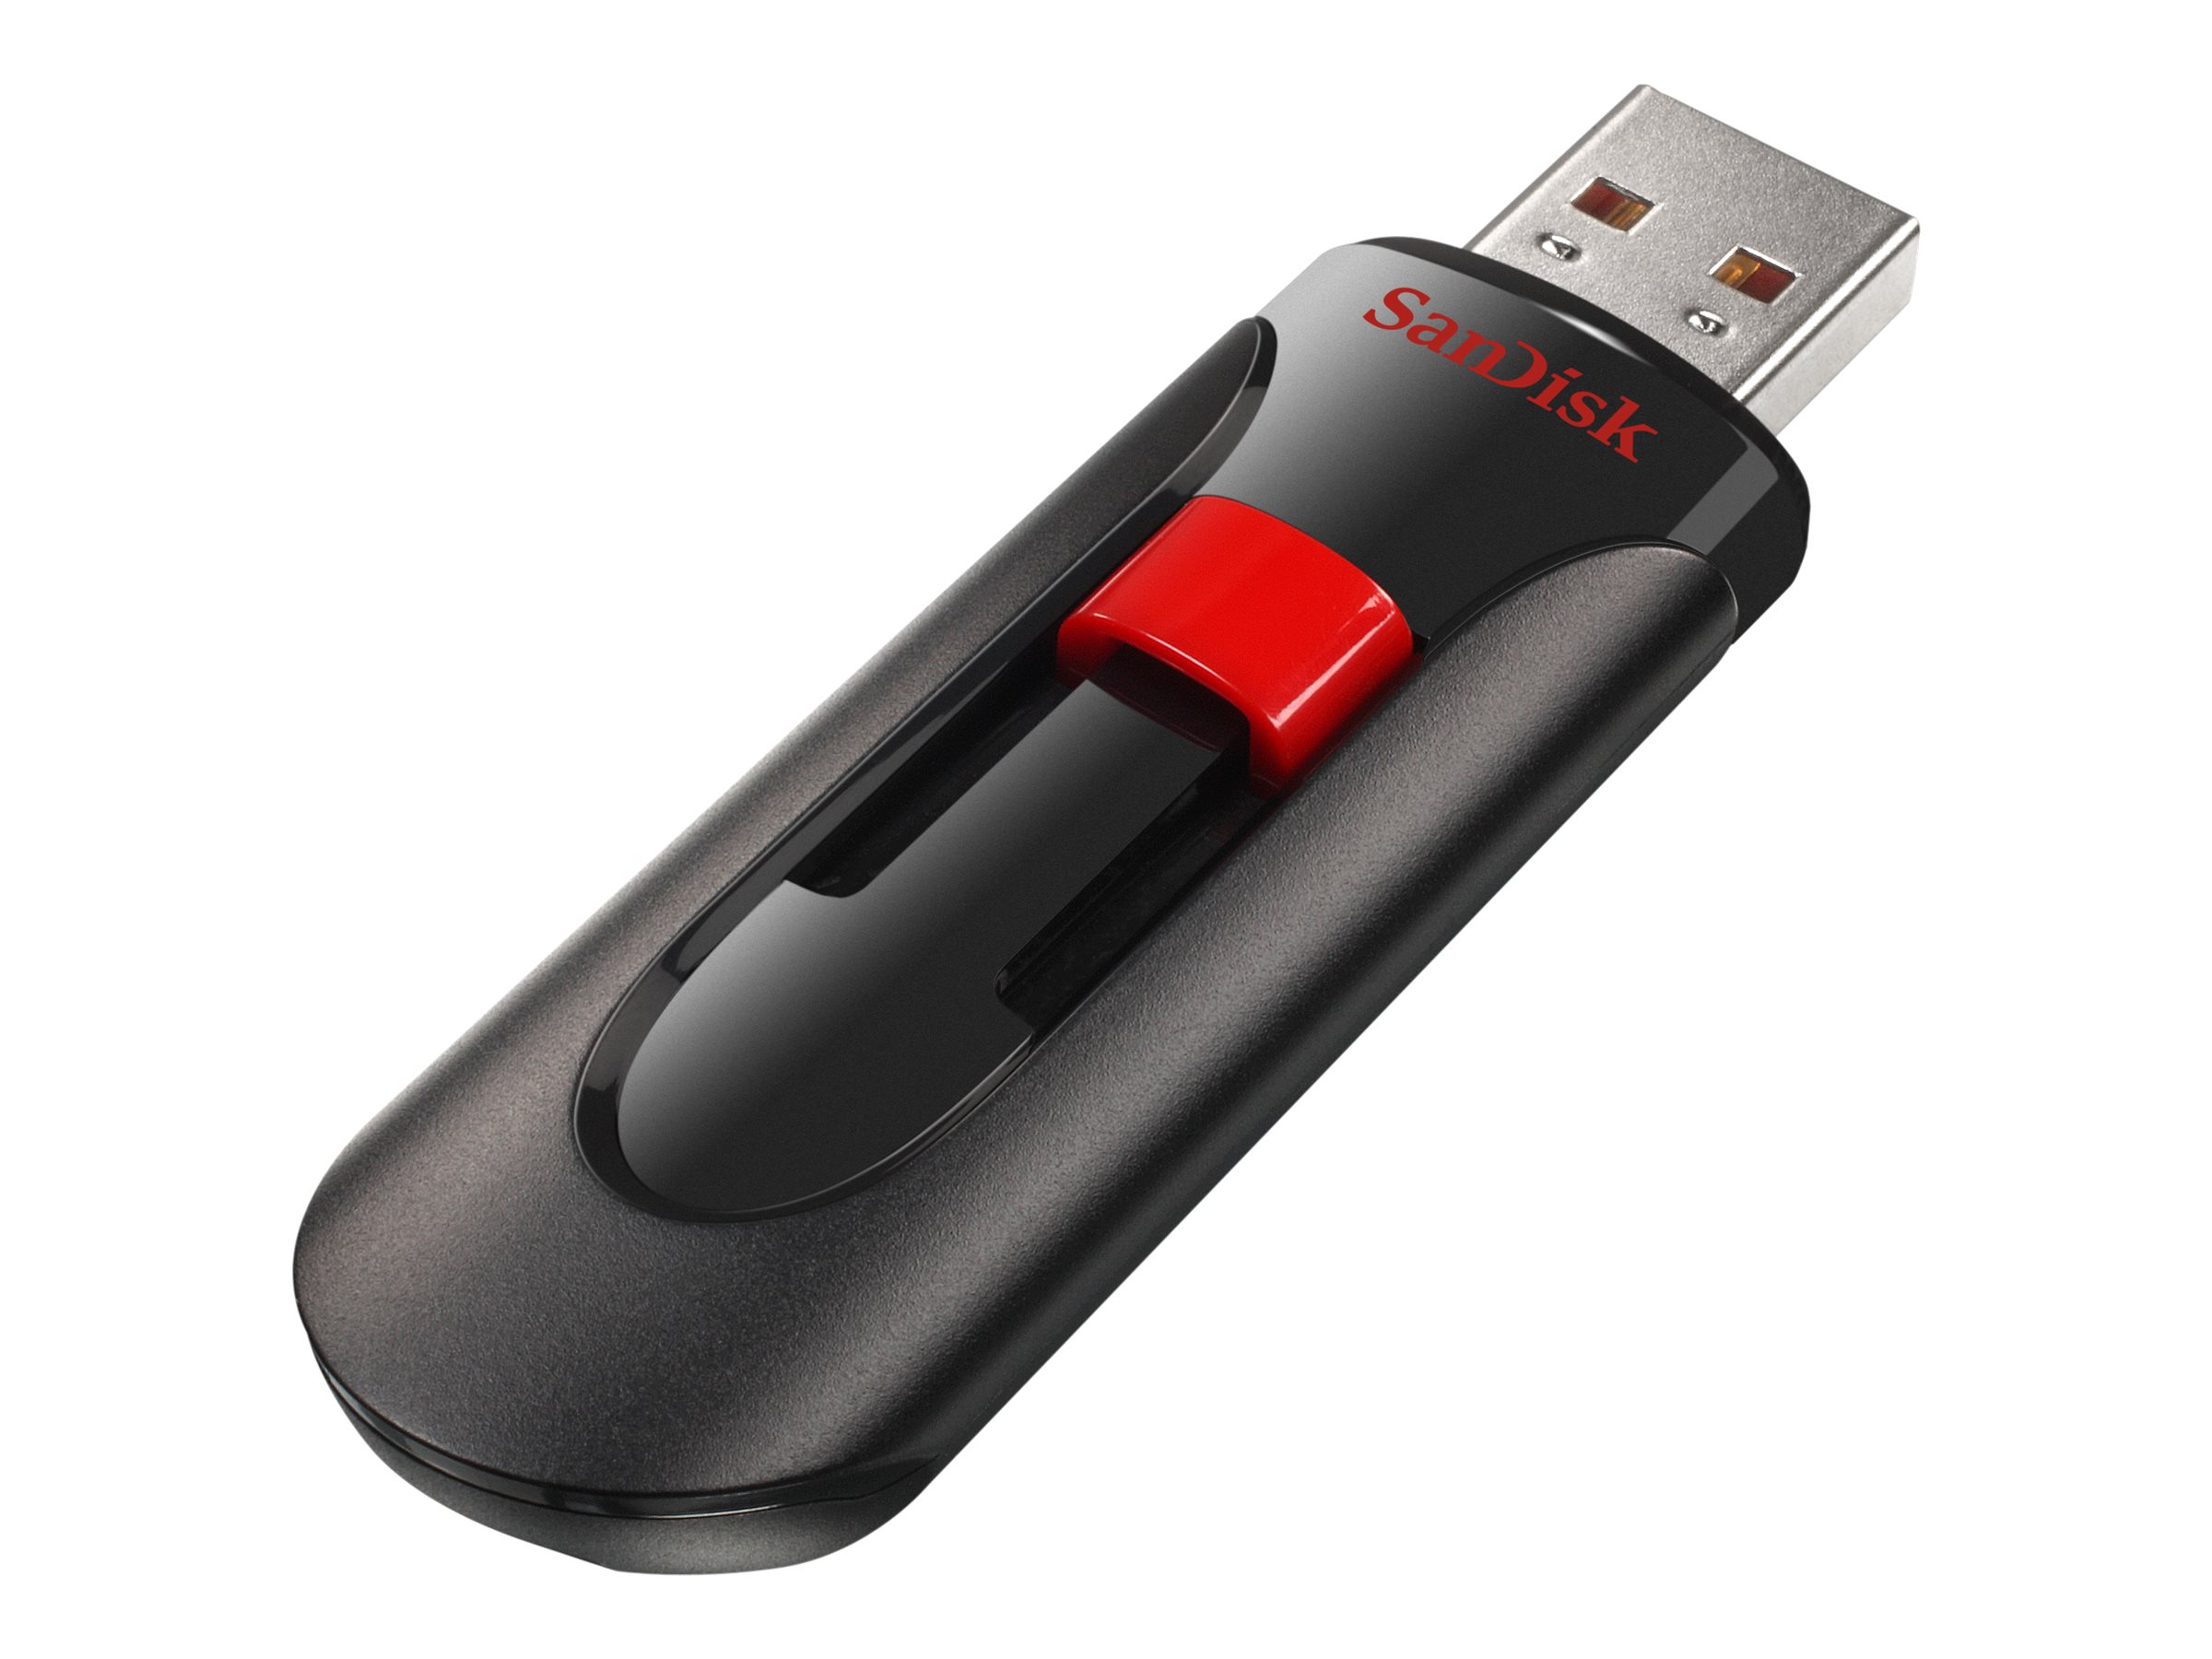 SanDisk Cruzer Glide - USB-Flash-Laufwerk - 256 GB - USB 2.0 - Schwarz, Rot